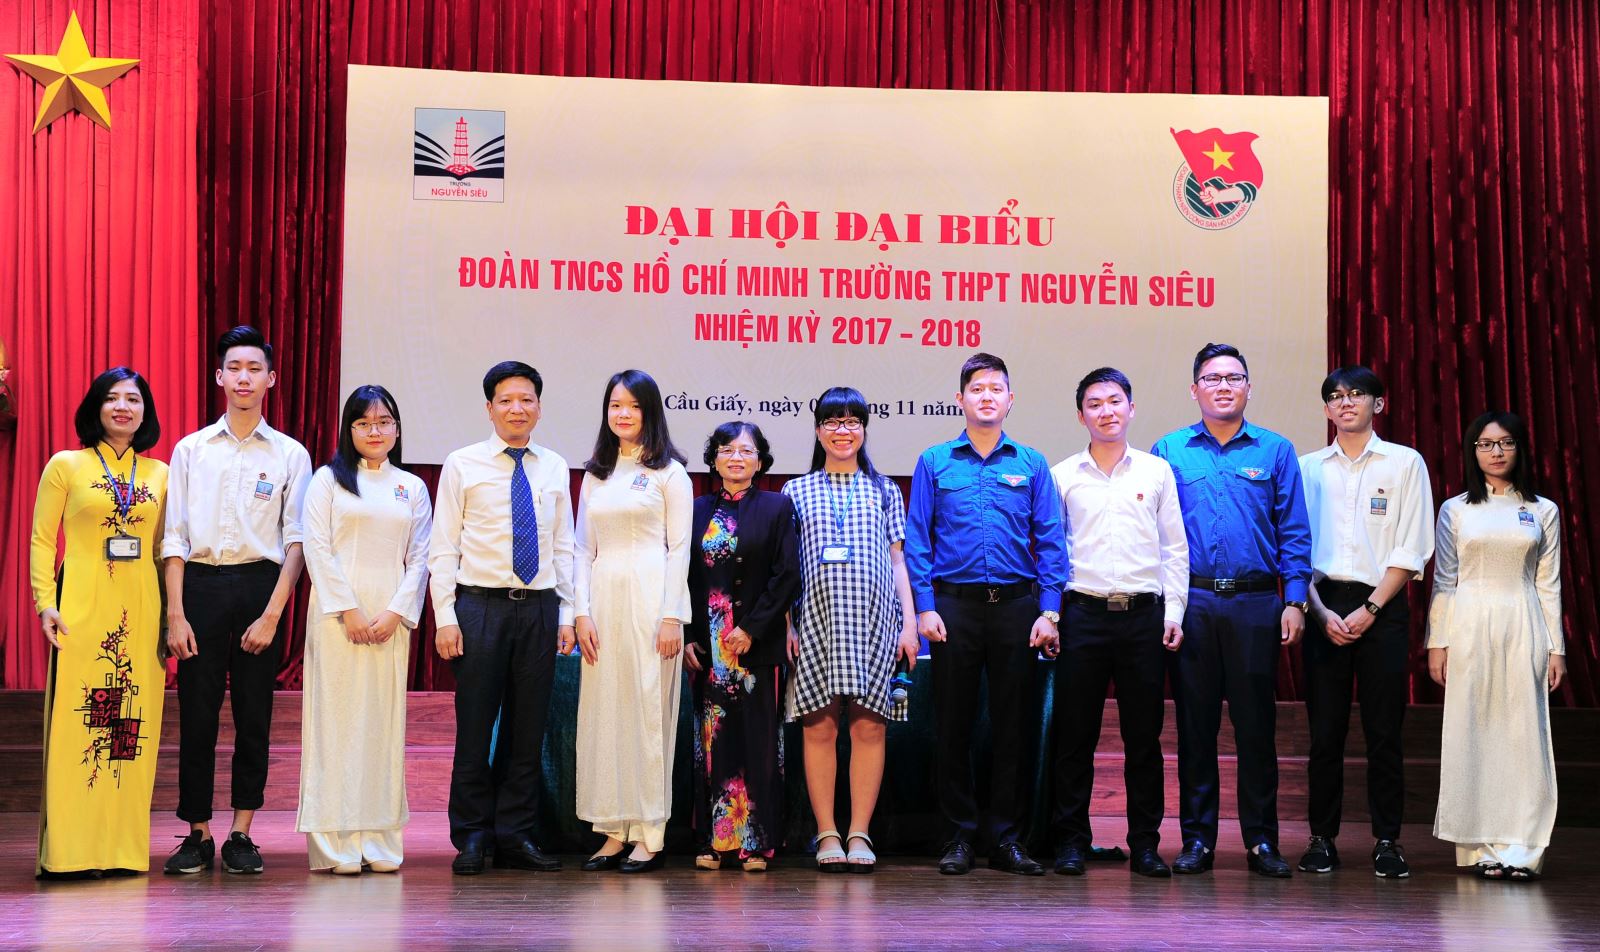 Đại hội đại biểu Đoàn TNCS Hồ Chí Minh trường Nguyễn Siêu thành công rực rỡ